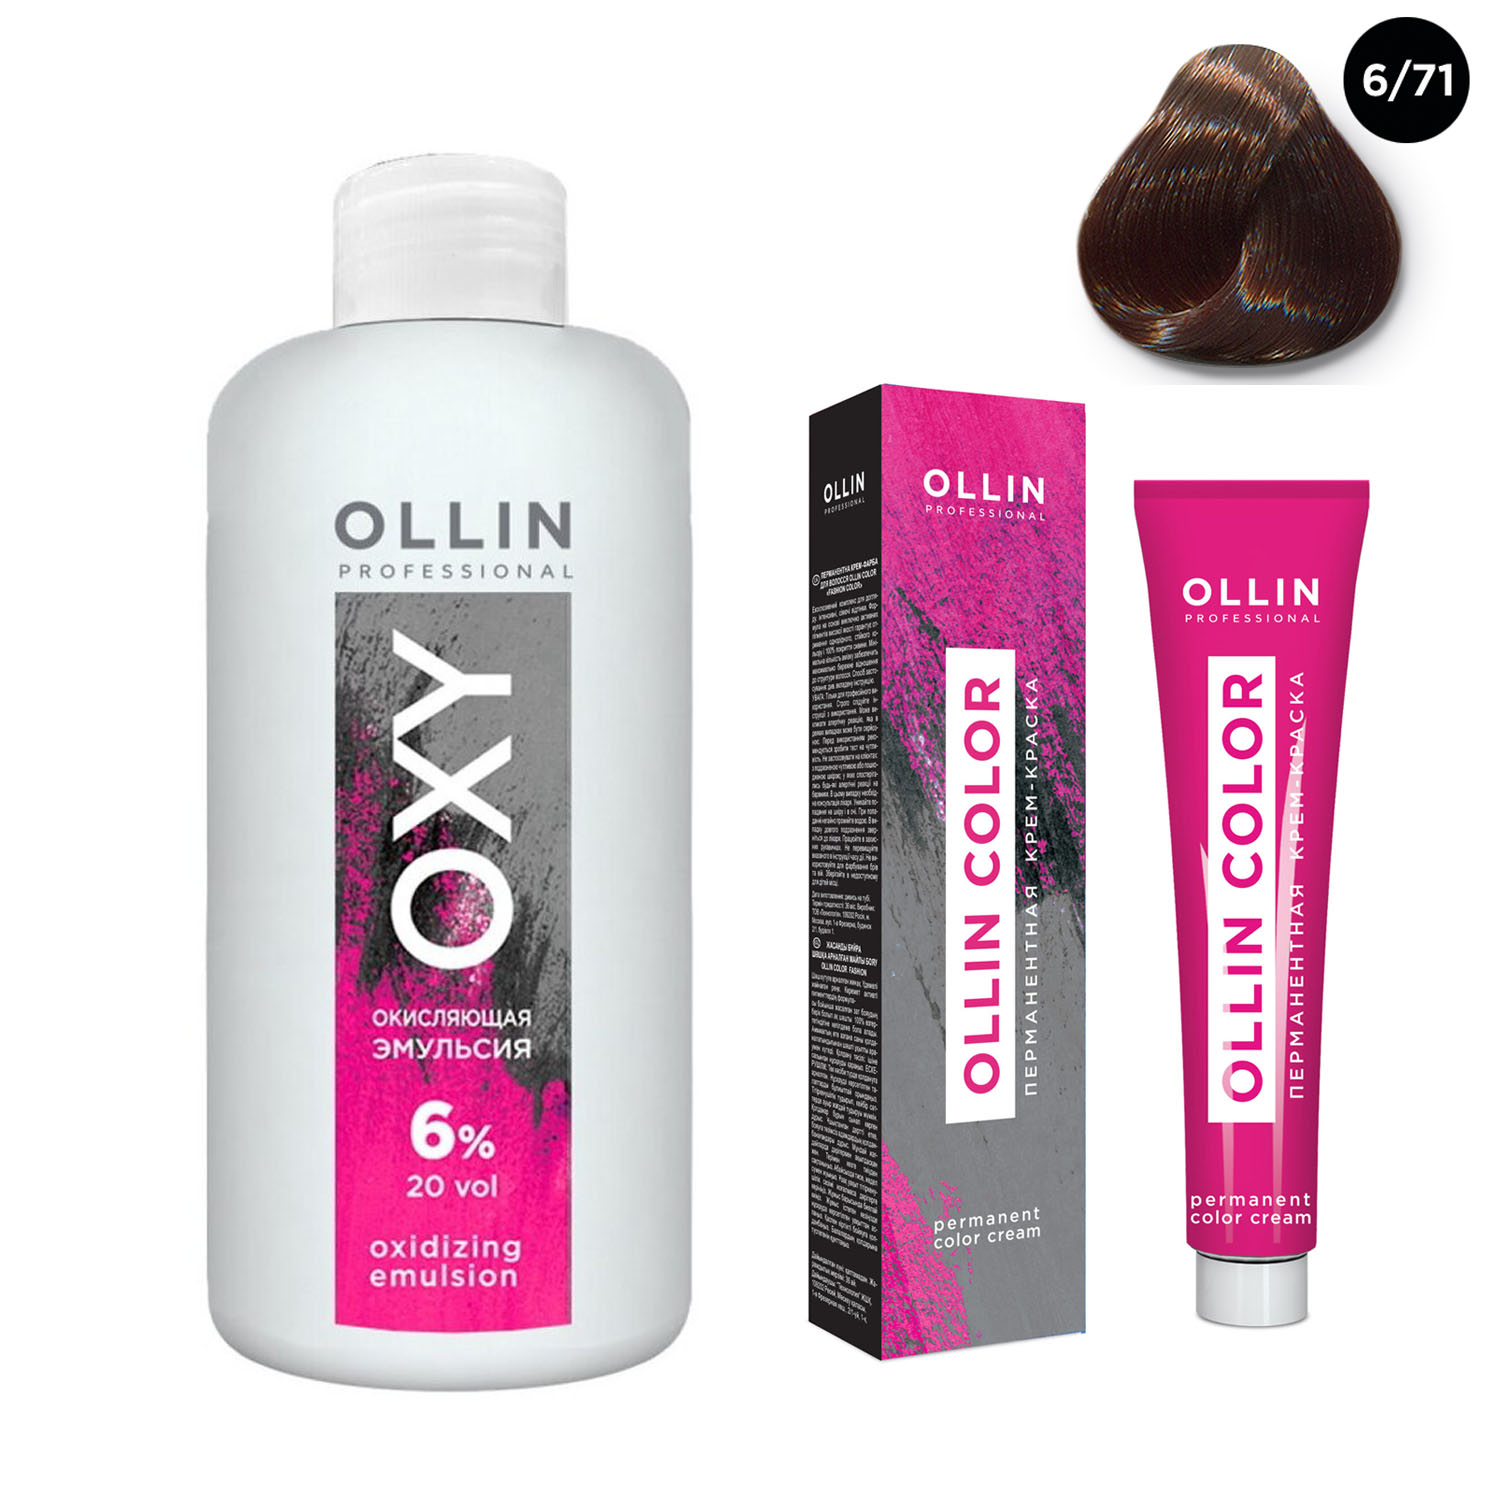 Ollin Professional Набор Перманентная крем-краска для волос Ollin Color оттенок 6/71 темно-русый коричнево-пепельный 100 мл + Окисляющая эмульсия Oxy 6% 150 мл (Ollin Professional, Ollin Color)